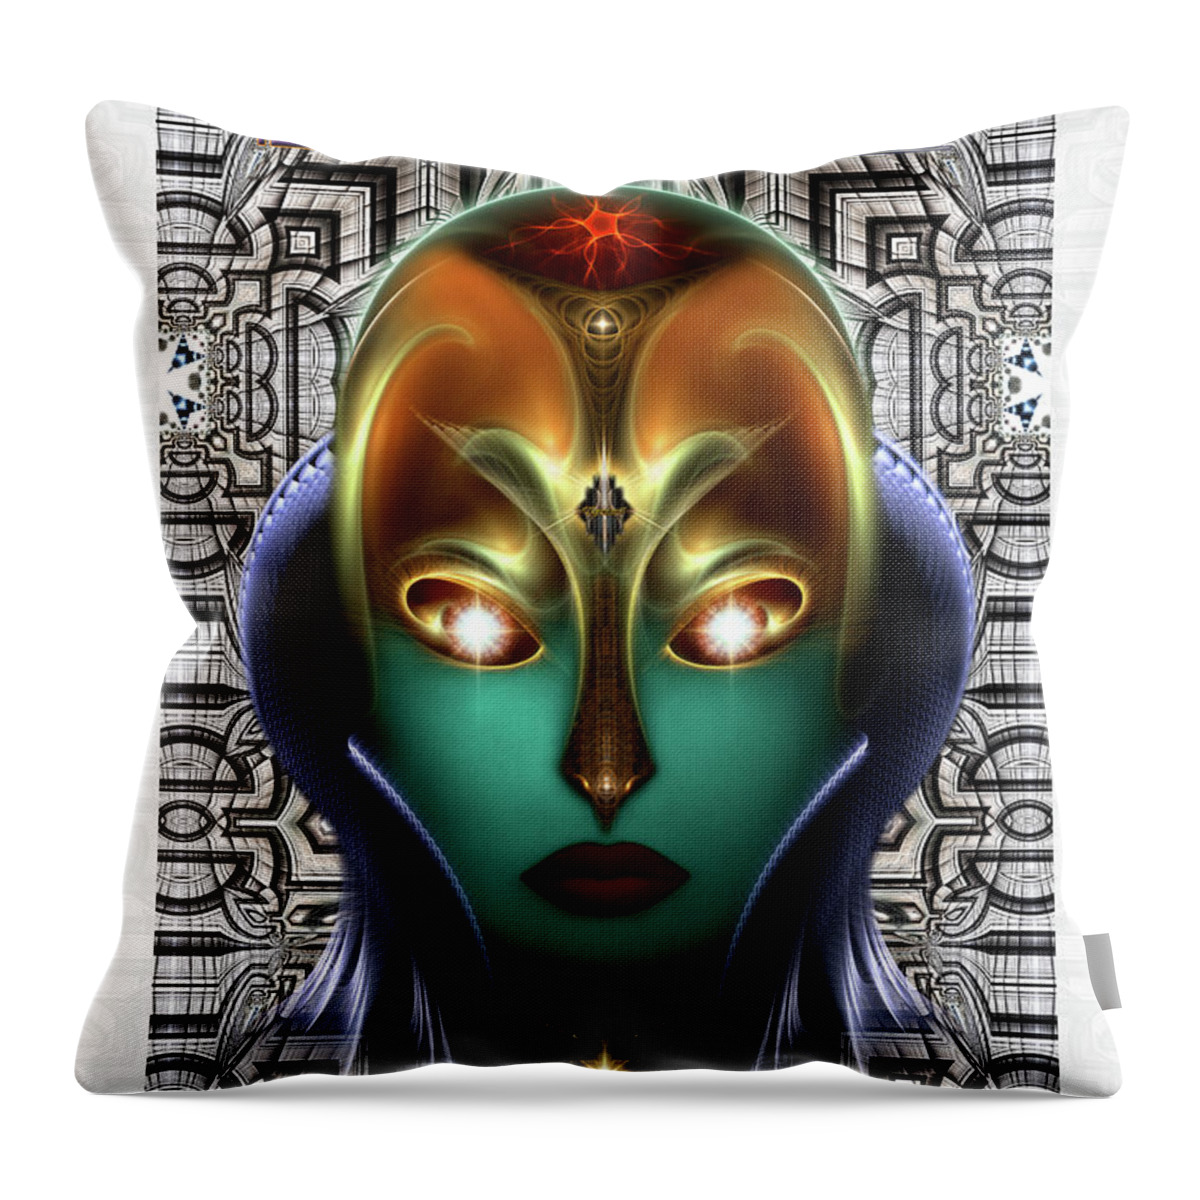 Daria Cyborg Queen Throw Pillow featuring the digital art Daria Cyborg Queen Tech Fractal Portrait by Rolando Burbon